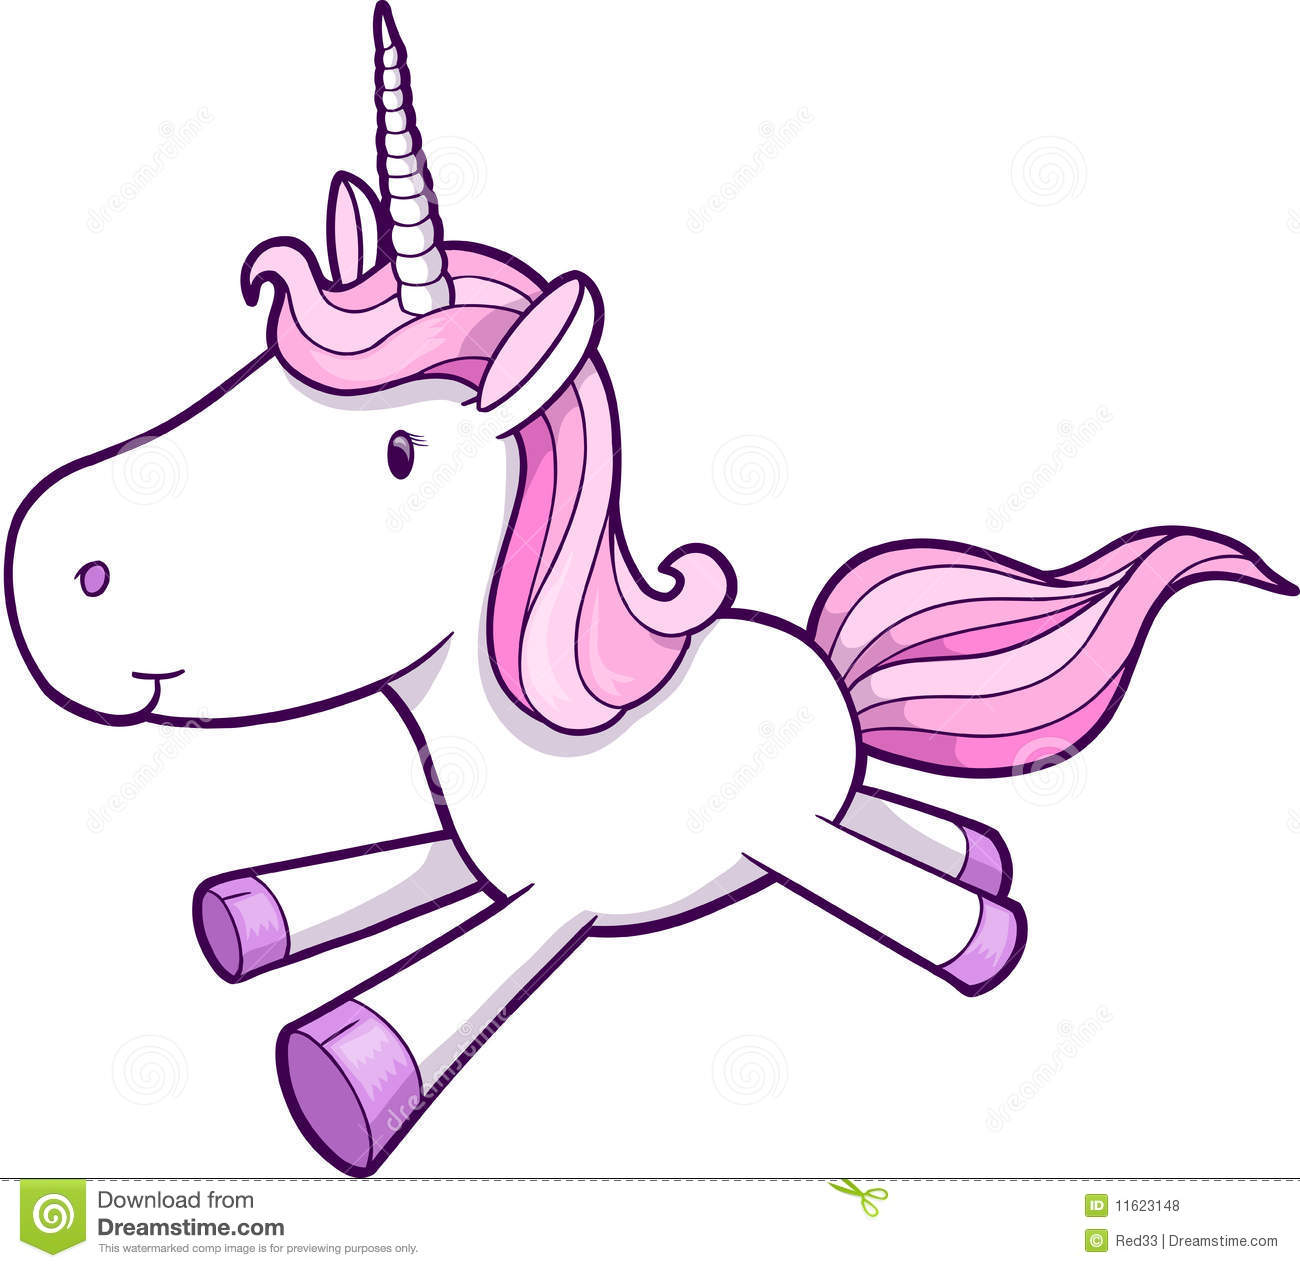 free animated unicorn clipart - photo #27